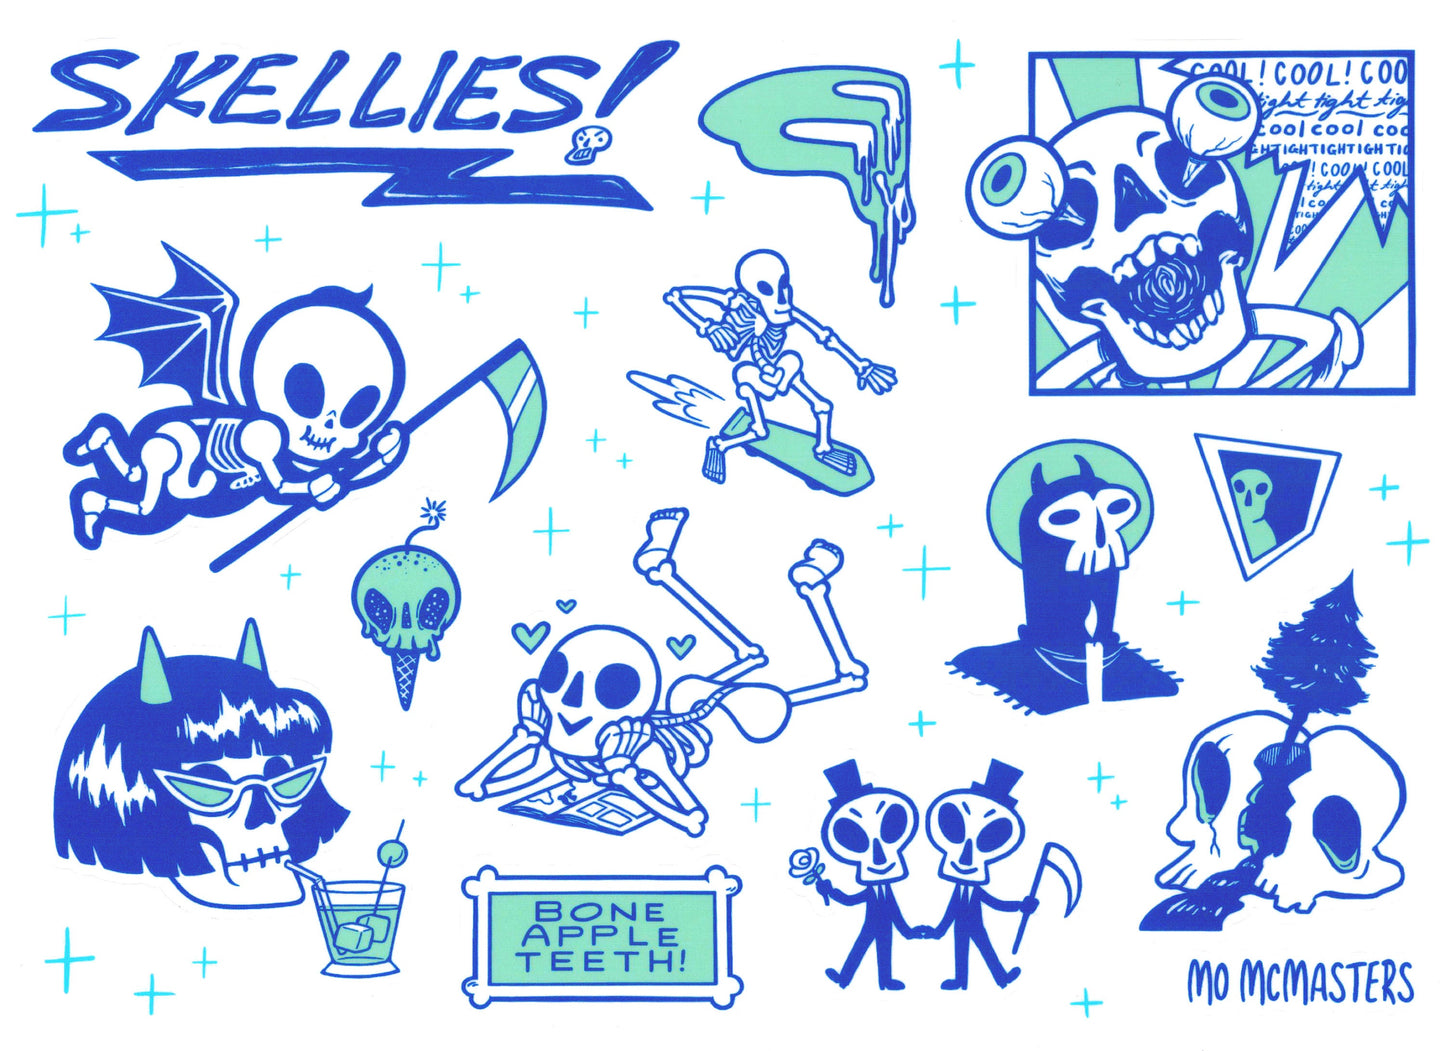 8"x11" SKELLIES! Skeleton Sticker Sheet